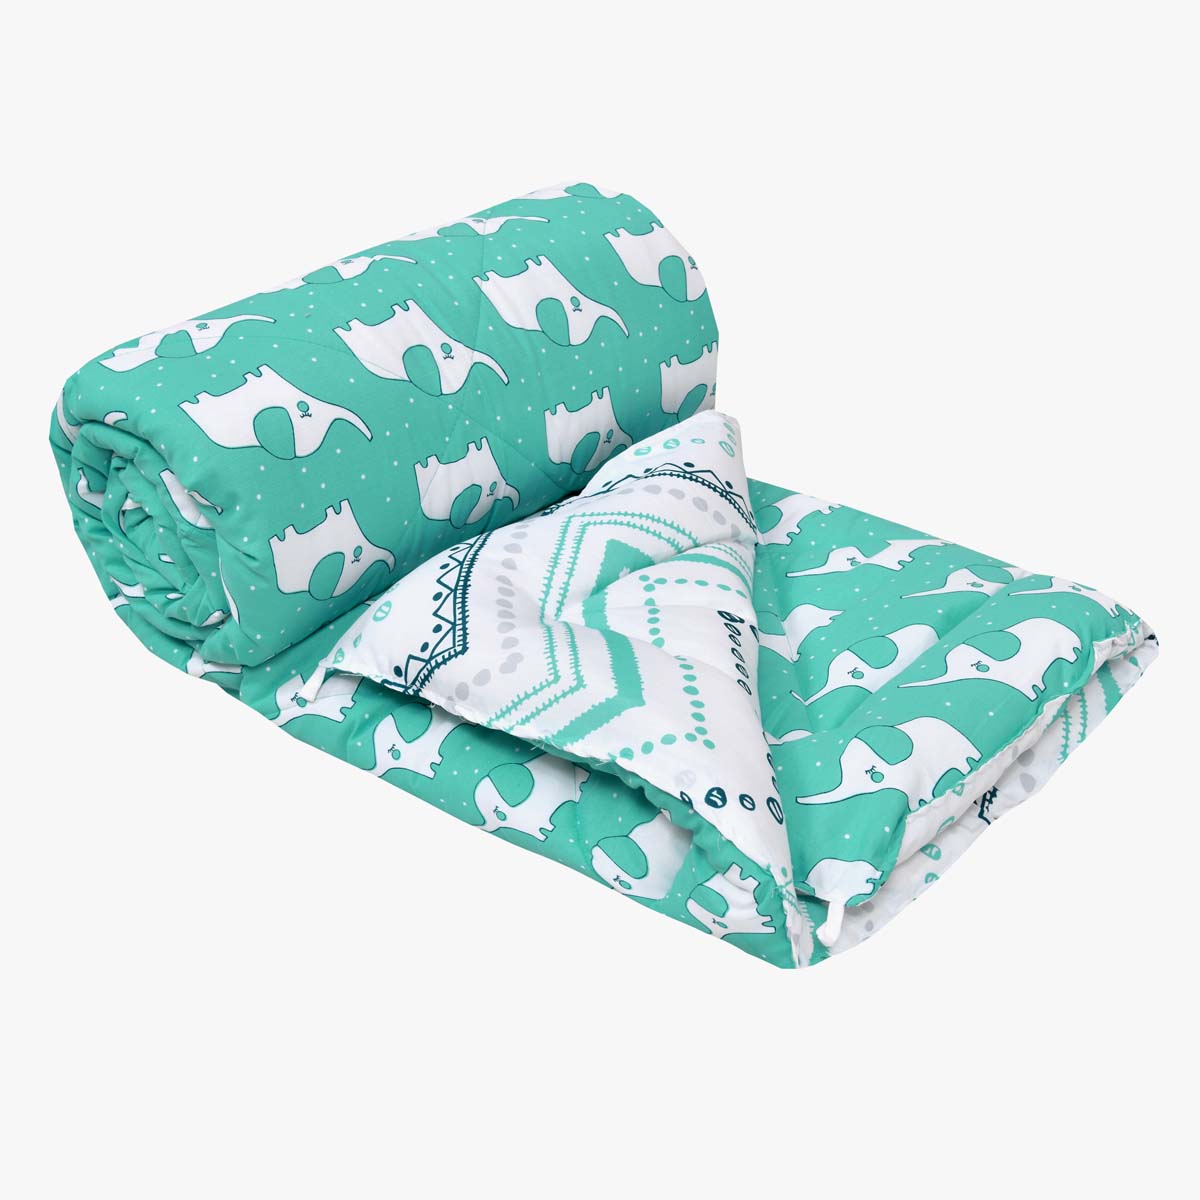 Minitrunks Green Single Bed Kids Comforter